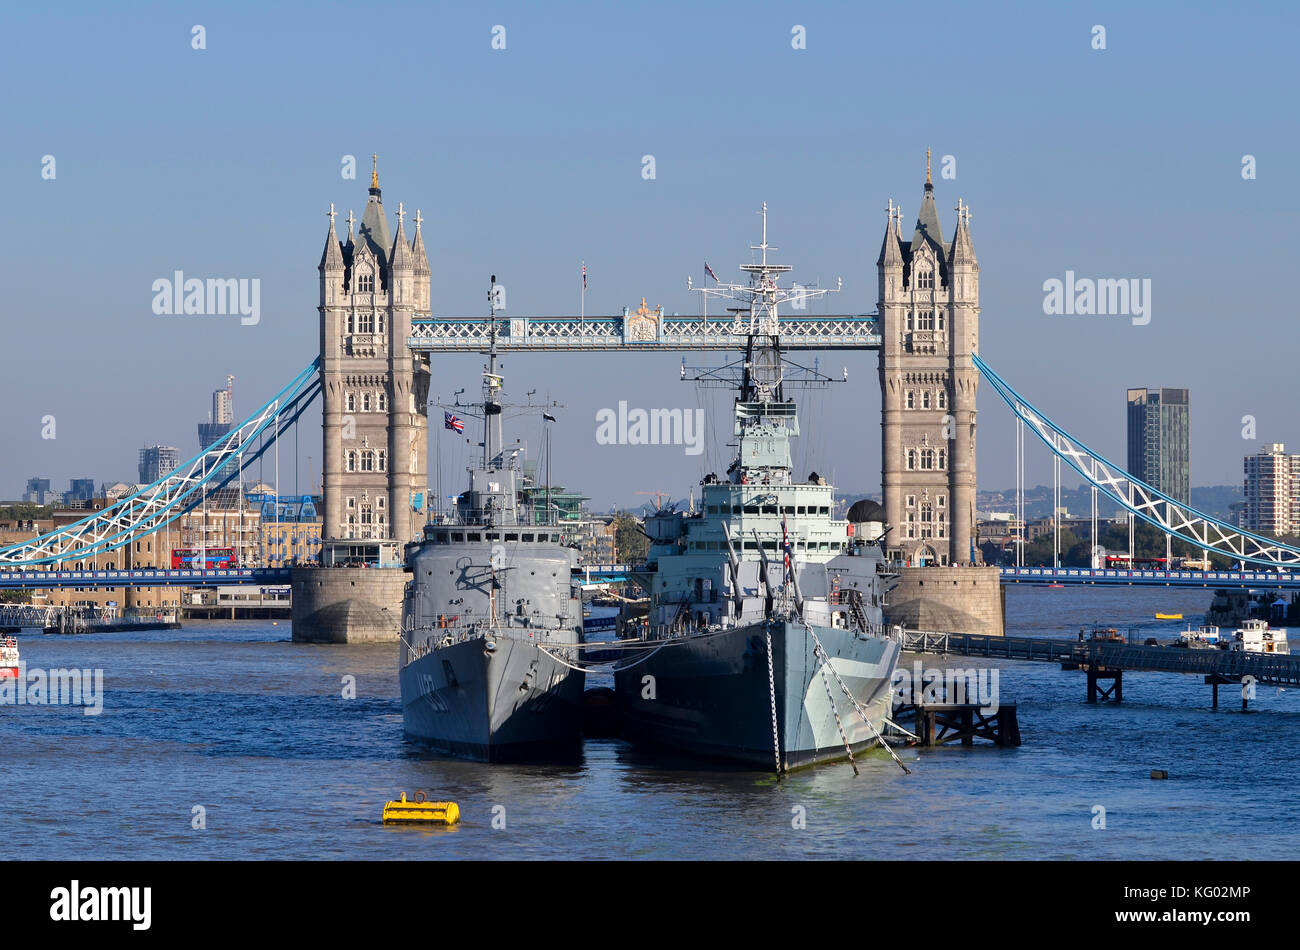 HMS Belfast y Marina de Brasil U27 barco de entrenamiento con el puente de la torre detrás, el Río Támesis, piscina de London, Londres, Reino Unido. Foto de stock